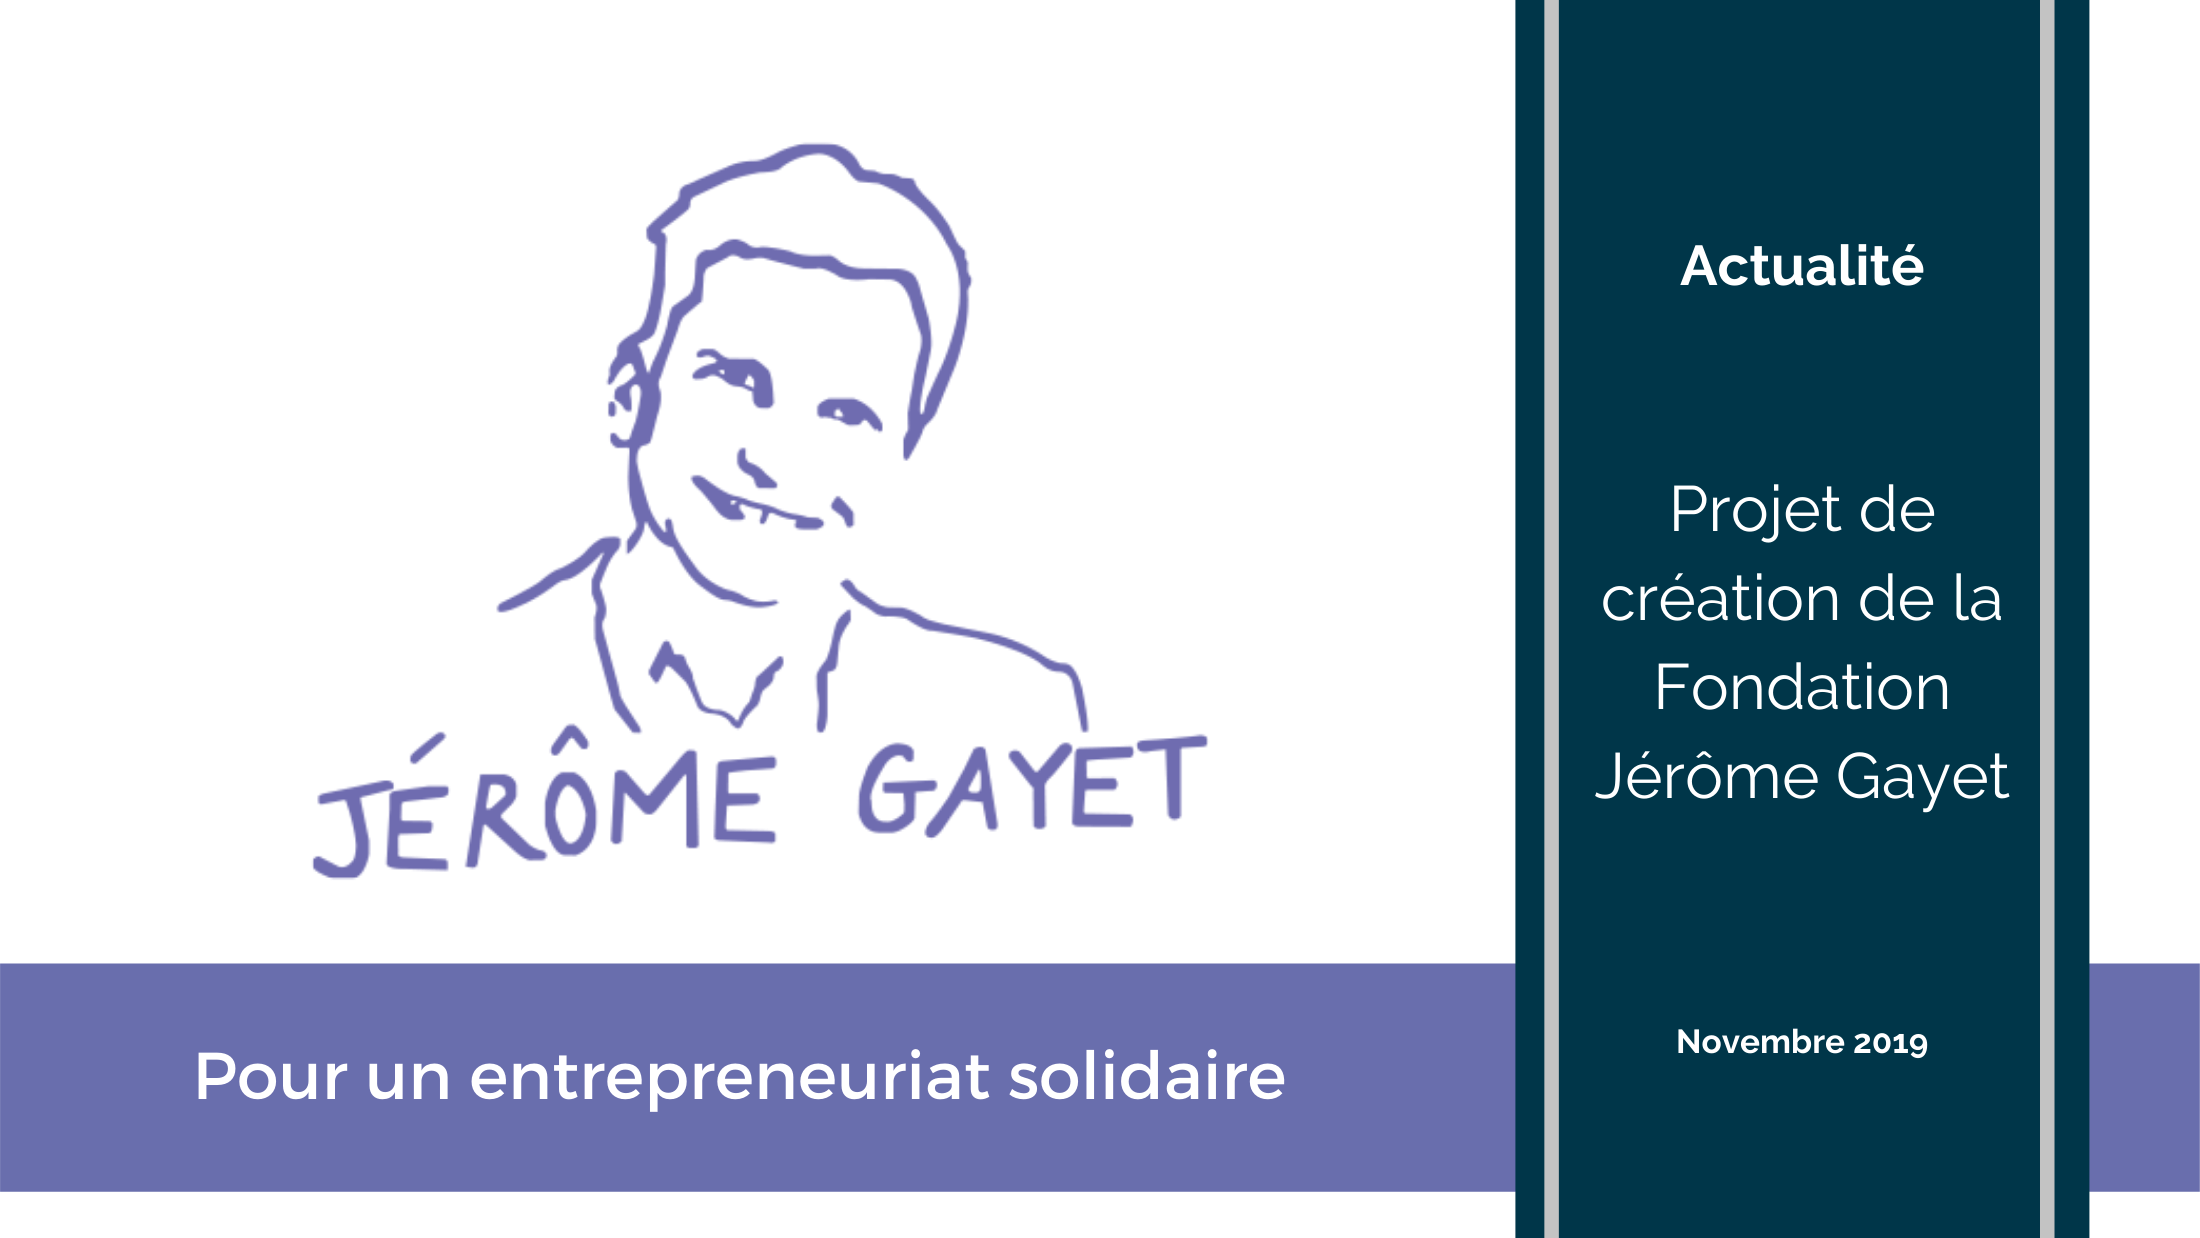 Expérience client - Lancement du projet de création de la Fondation Jérôme Gayet